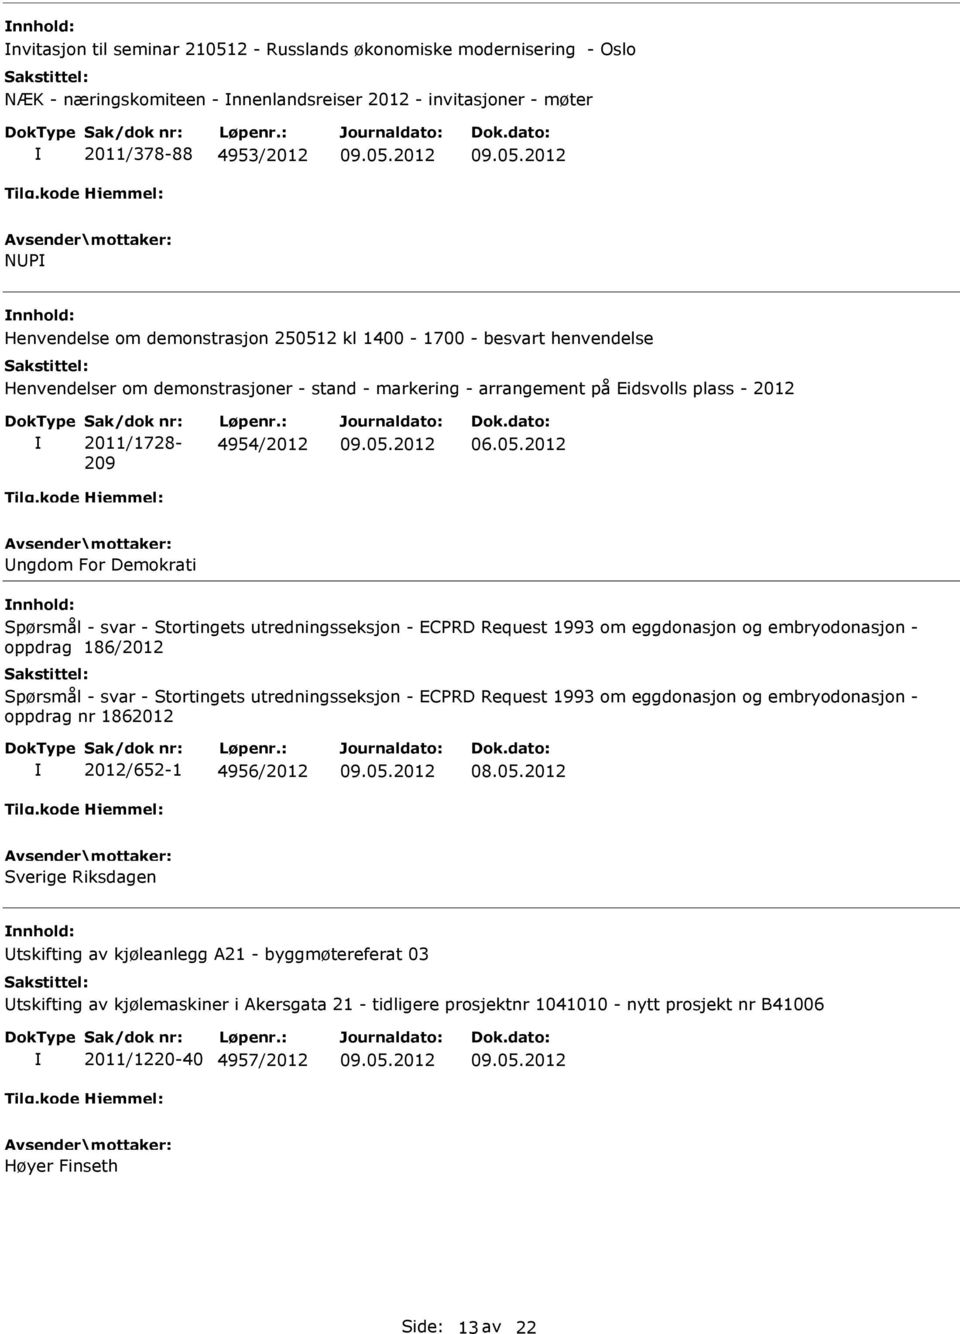 2 kl 1400-1700 - besvart henvendelse Henvendelser om demonstrasjoner - stand - markering - arrangement på Eidsvolls plass - 2012 Sak/dok nr: 2011/1728-209 Løpenr.: 4954/2012 06.05.